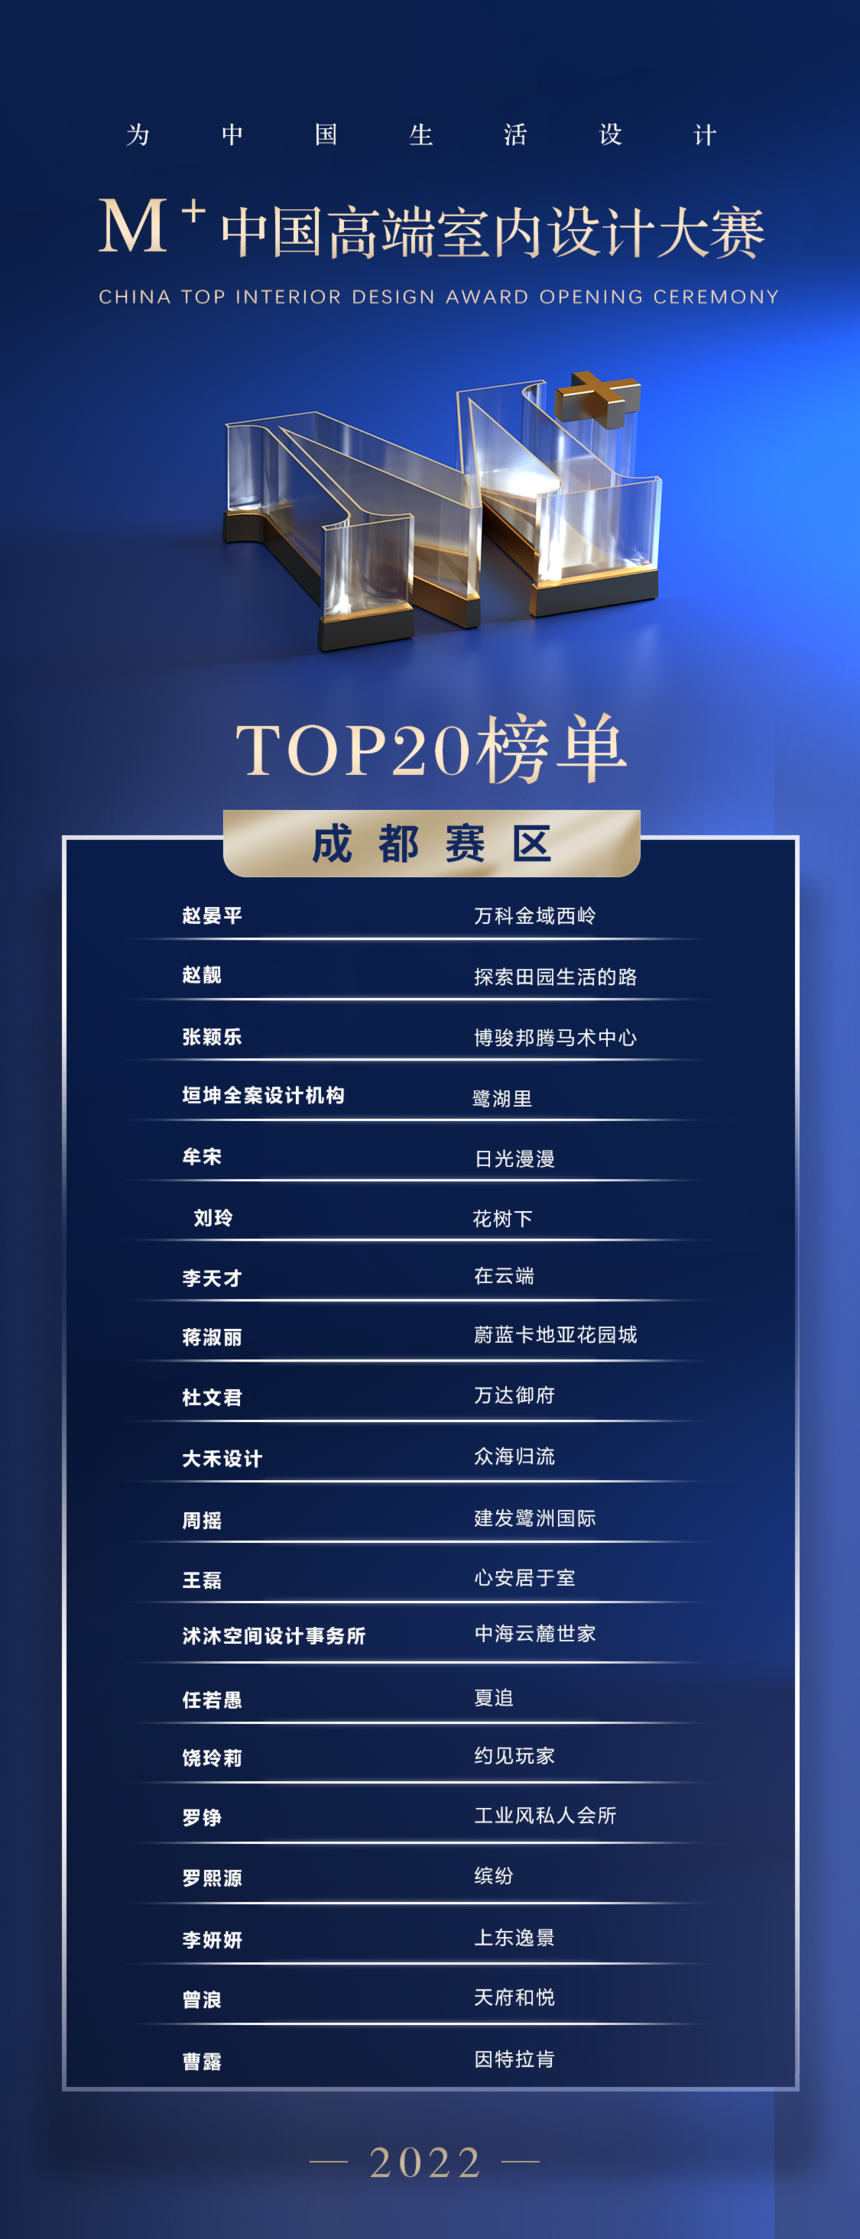 为成都生活设计——2022M+中国高端室内设计大赛成都赛区TOP20荣耀揭晓,成都赛区 发文 9.png,第9张